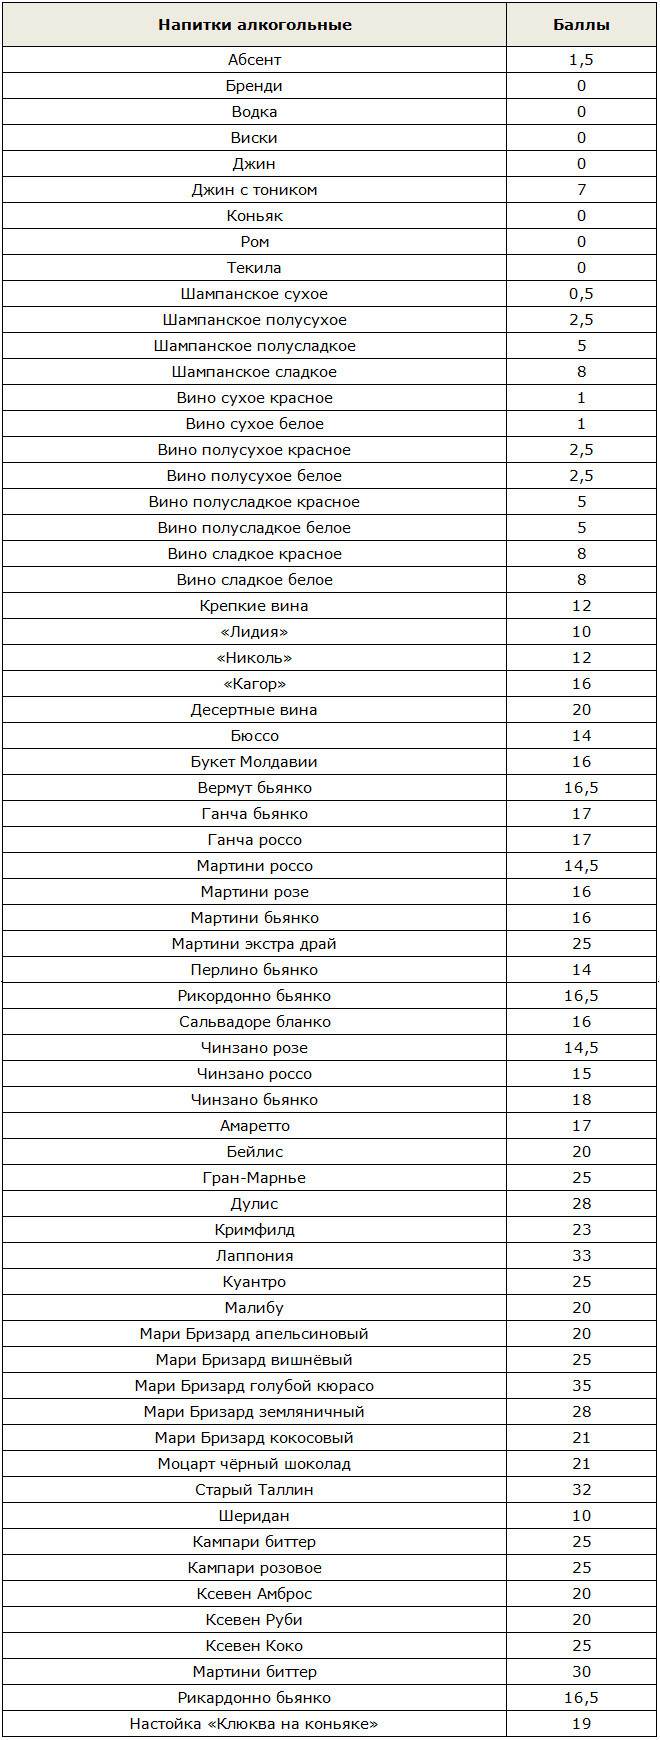 Таблица баллов алкогольных напитков в кремлёвской диете